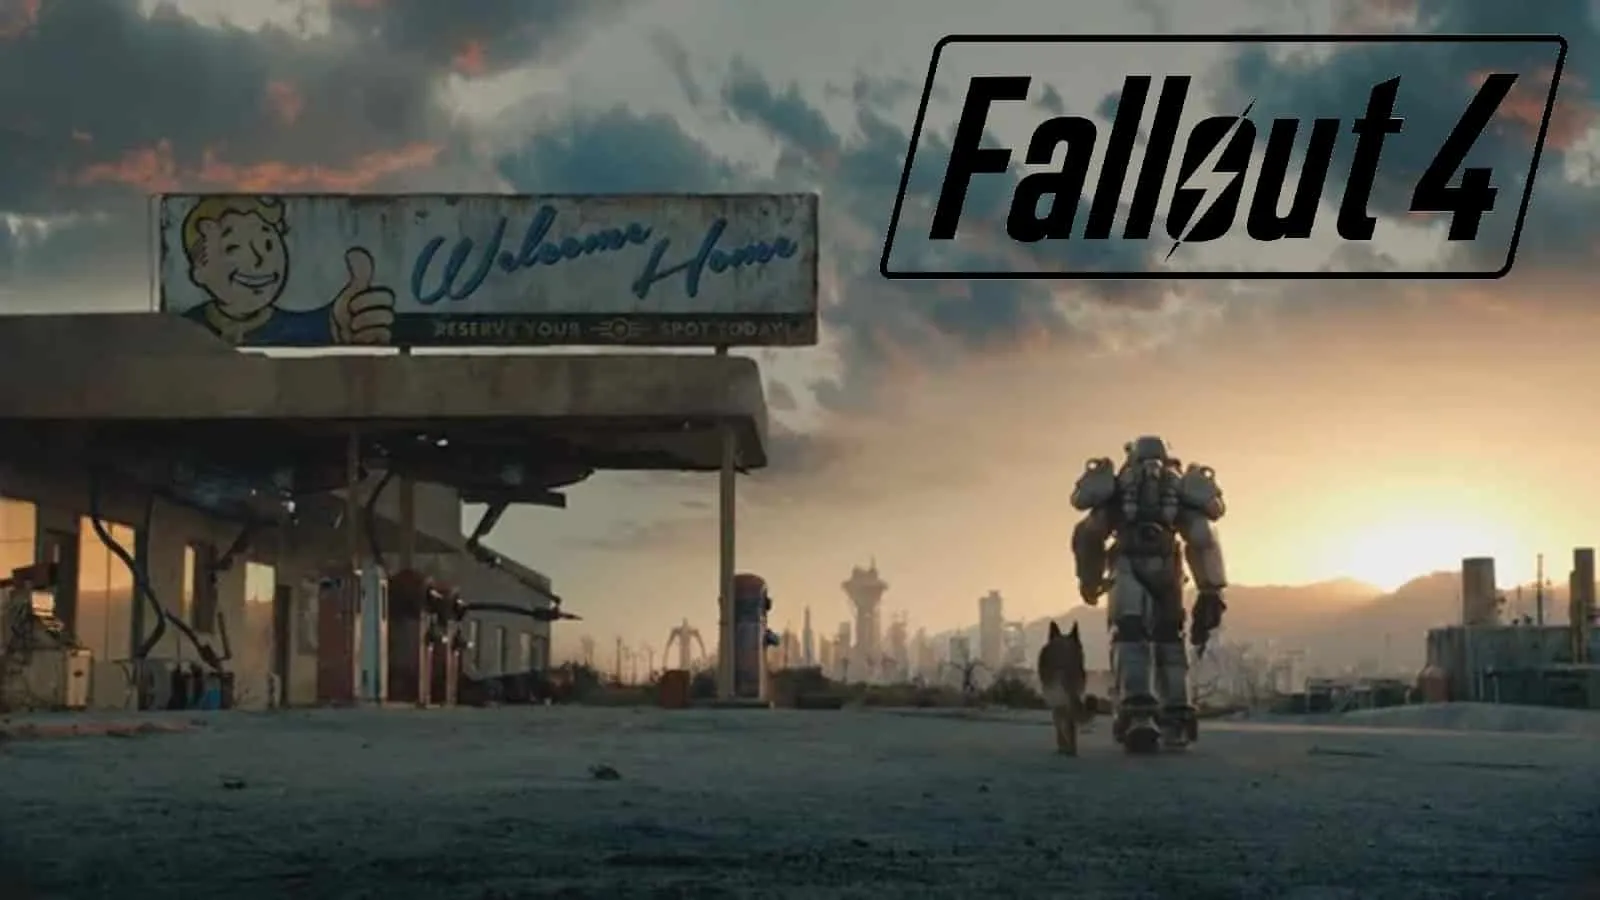 Skyrim과 같은 게임인 Fallout 4에서 Dogmeat을 사용하는 Wanderer의 이미지입니다.